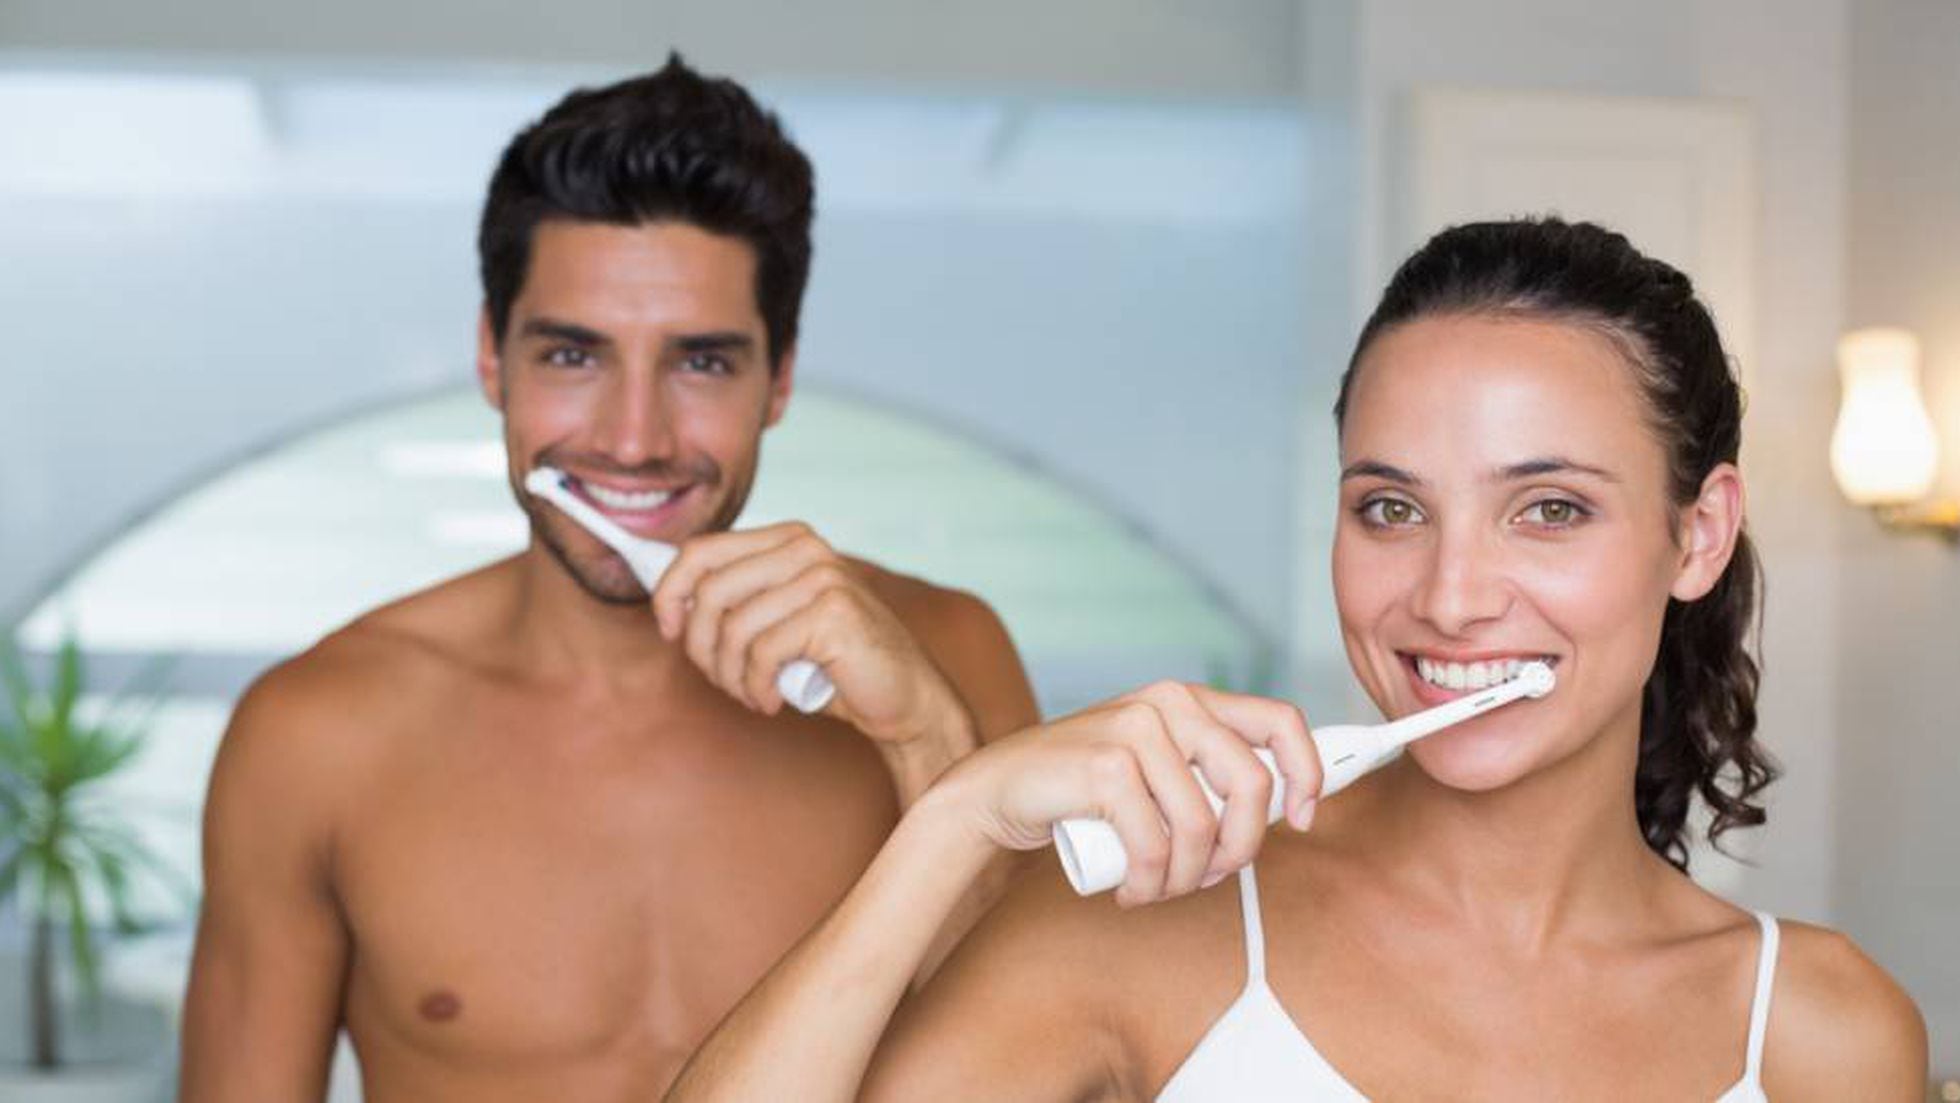 veterano valor Alerta Probamos cuatro cepillos de dientes eléctricos baratos y elegimos el mejor  | Escaparate: compras y ofertas | EL PAÍS